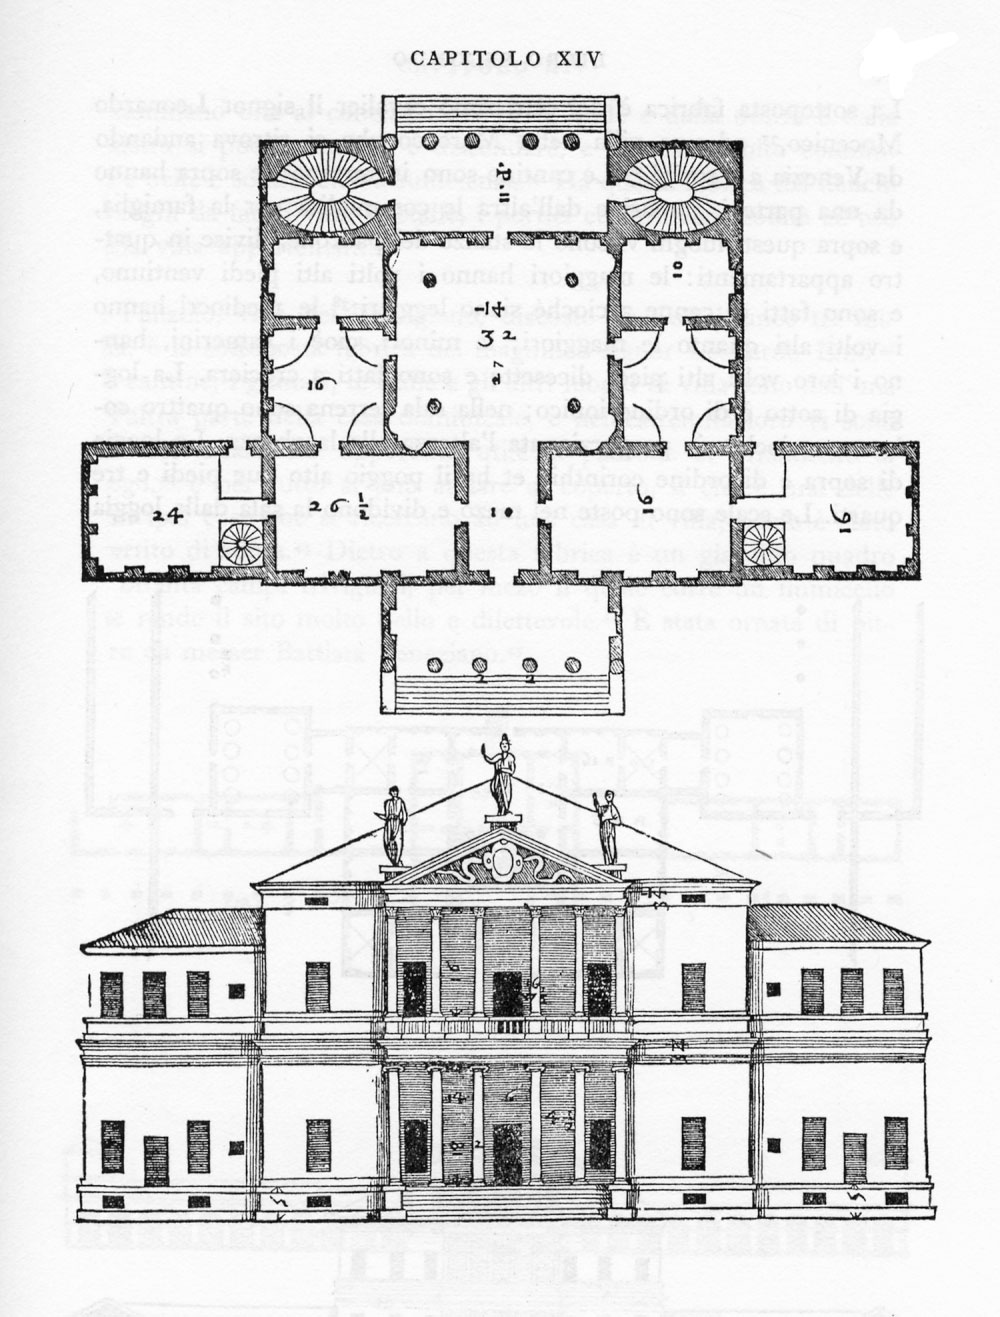 Lối kiến trúc của Andrea Palladio đặt nền móng cho kiến trúc tân cổ điển sau này